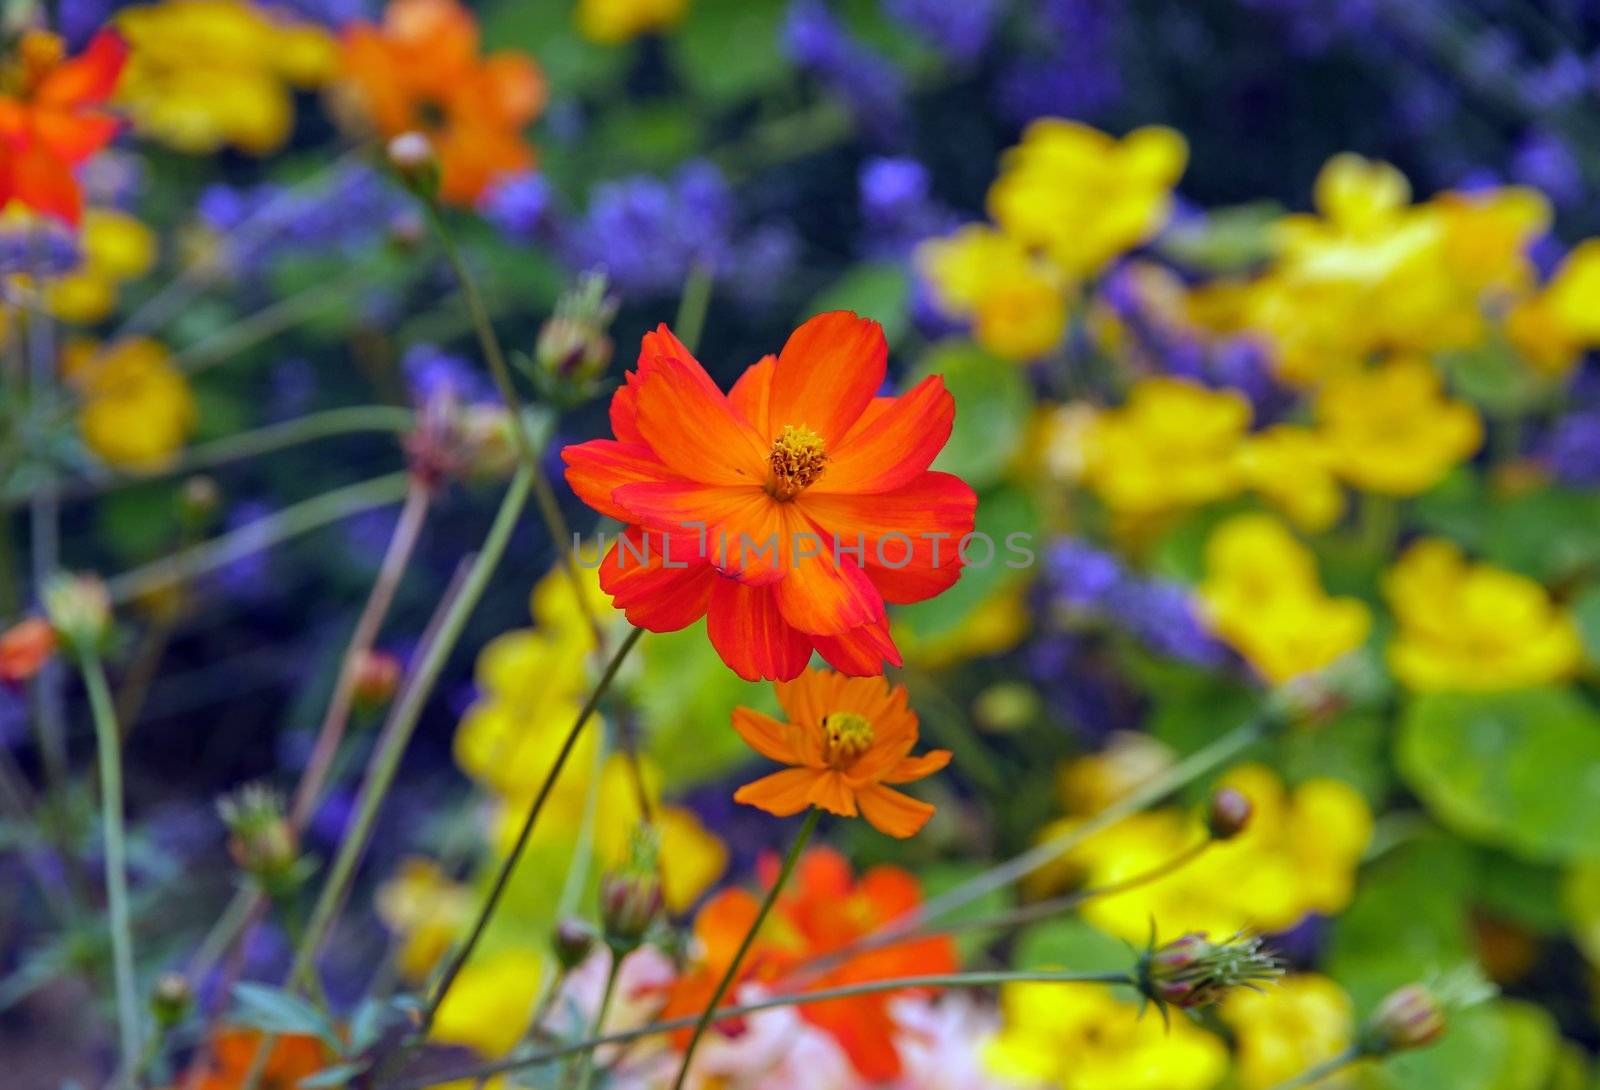 Orange cosmos, summer flower garden in France by neko92vl